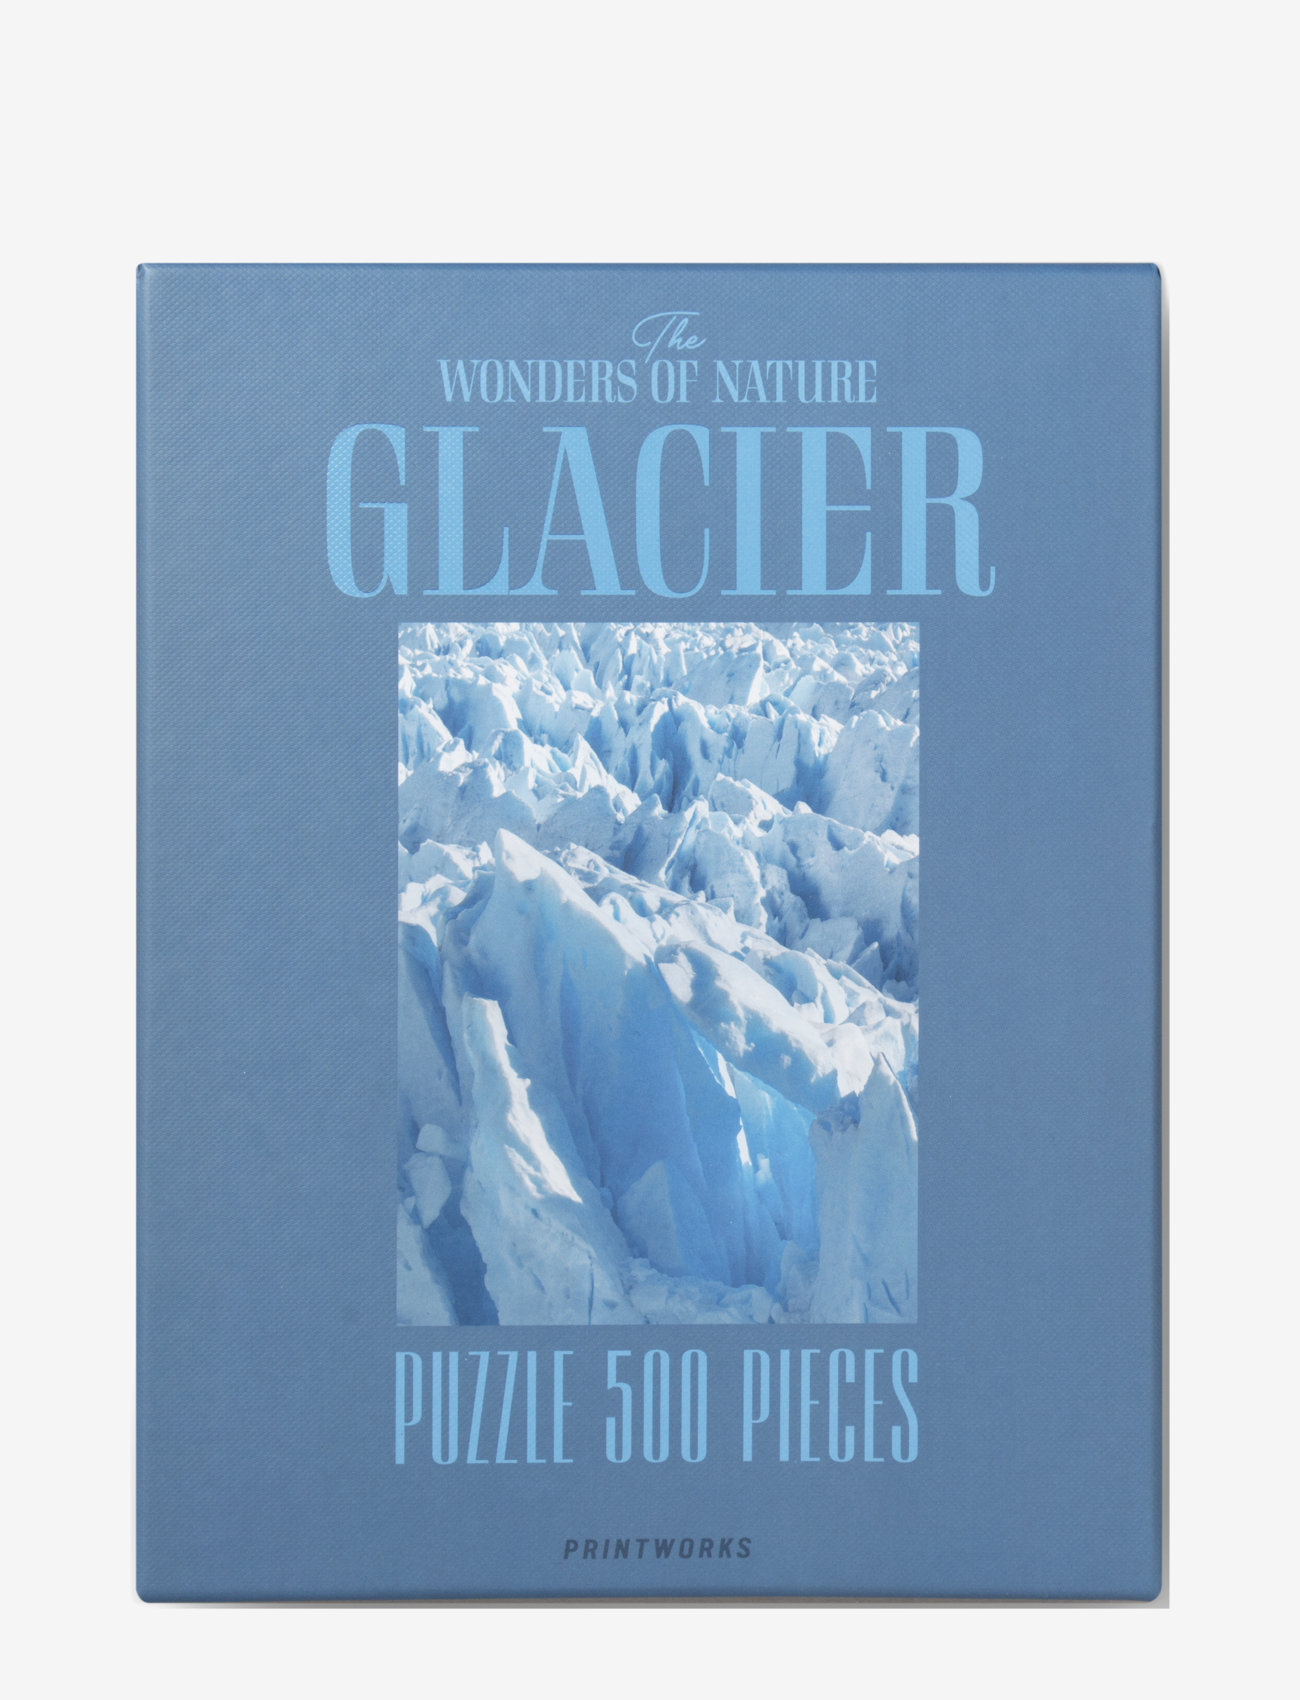 PRINTWORKS - Puzzle - Glacier - die niedrigsten preise - multi - 0